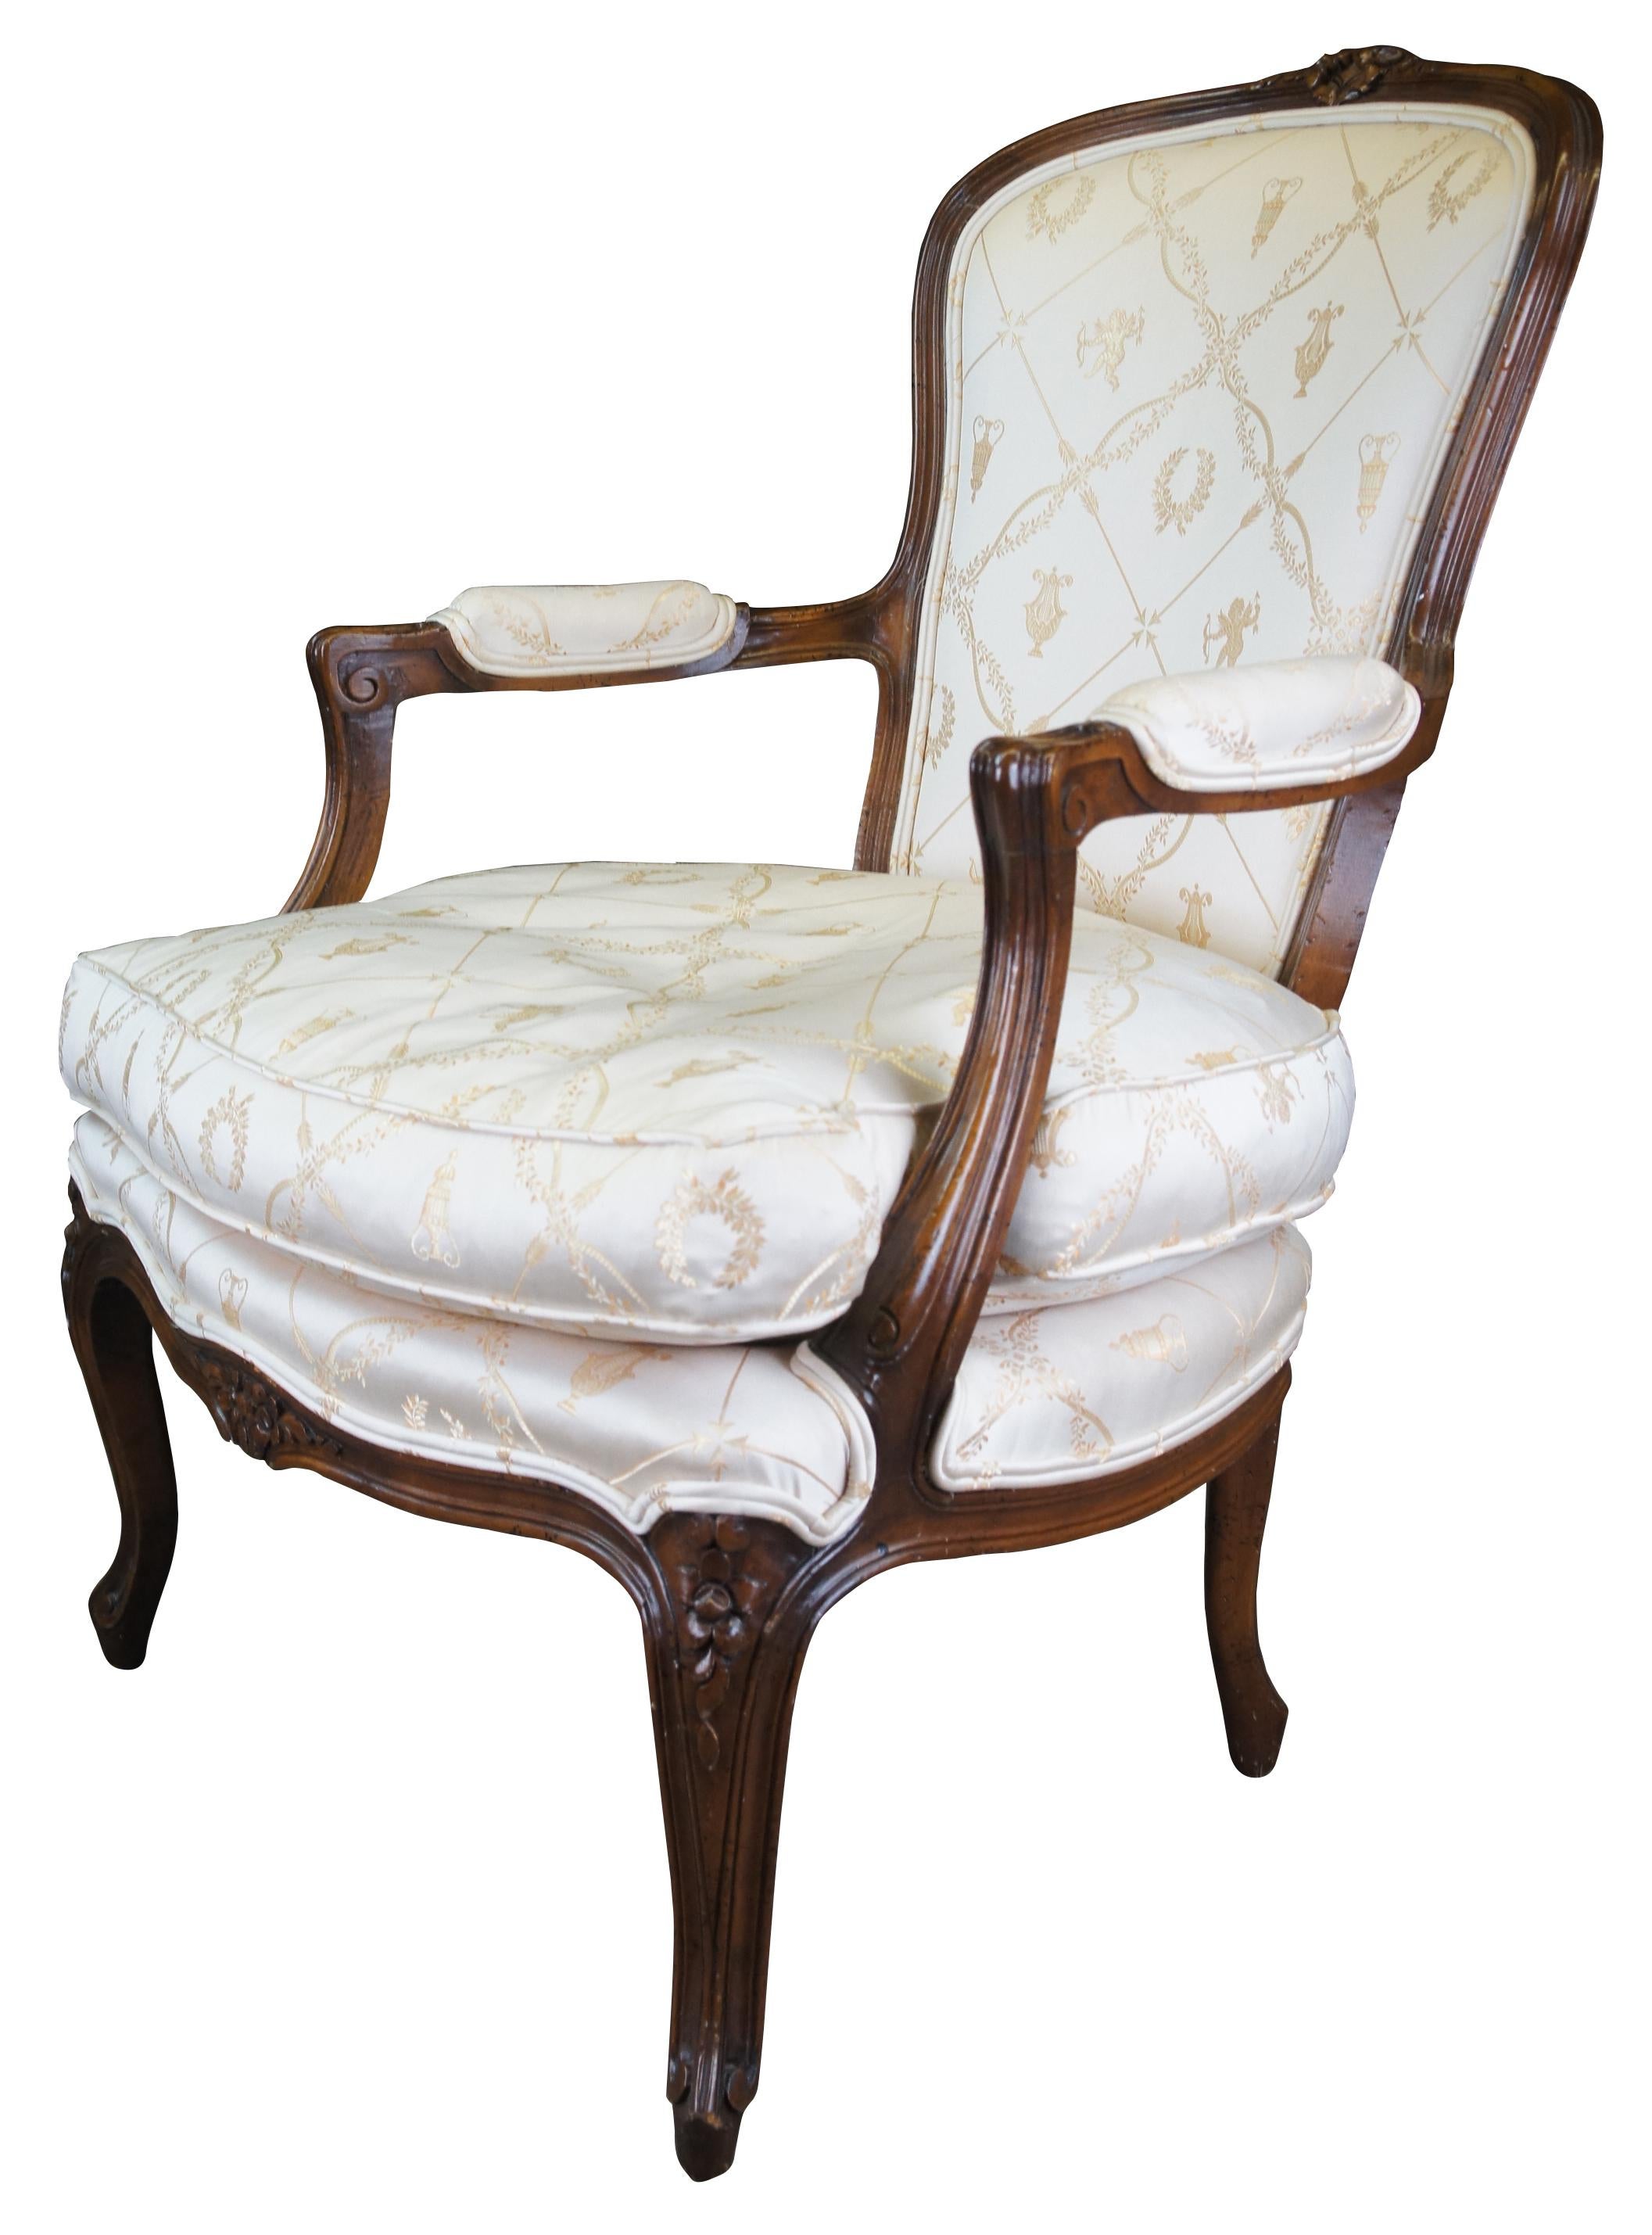 Une exquise chaise Fauteuil française par W & J Sloan Inc. Fabriquée en noyer naturellement vieilli, avec des sculptures feuillues, des bras à volutes rembourrés et des pieds cabriole. La chaise est recouverte d'un étonnant tissu classique